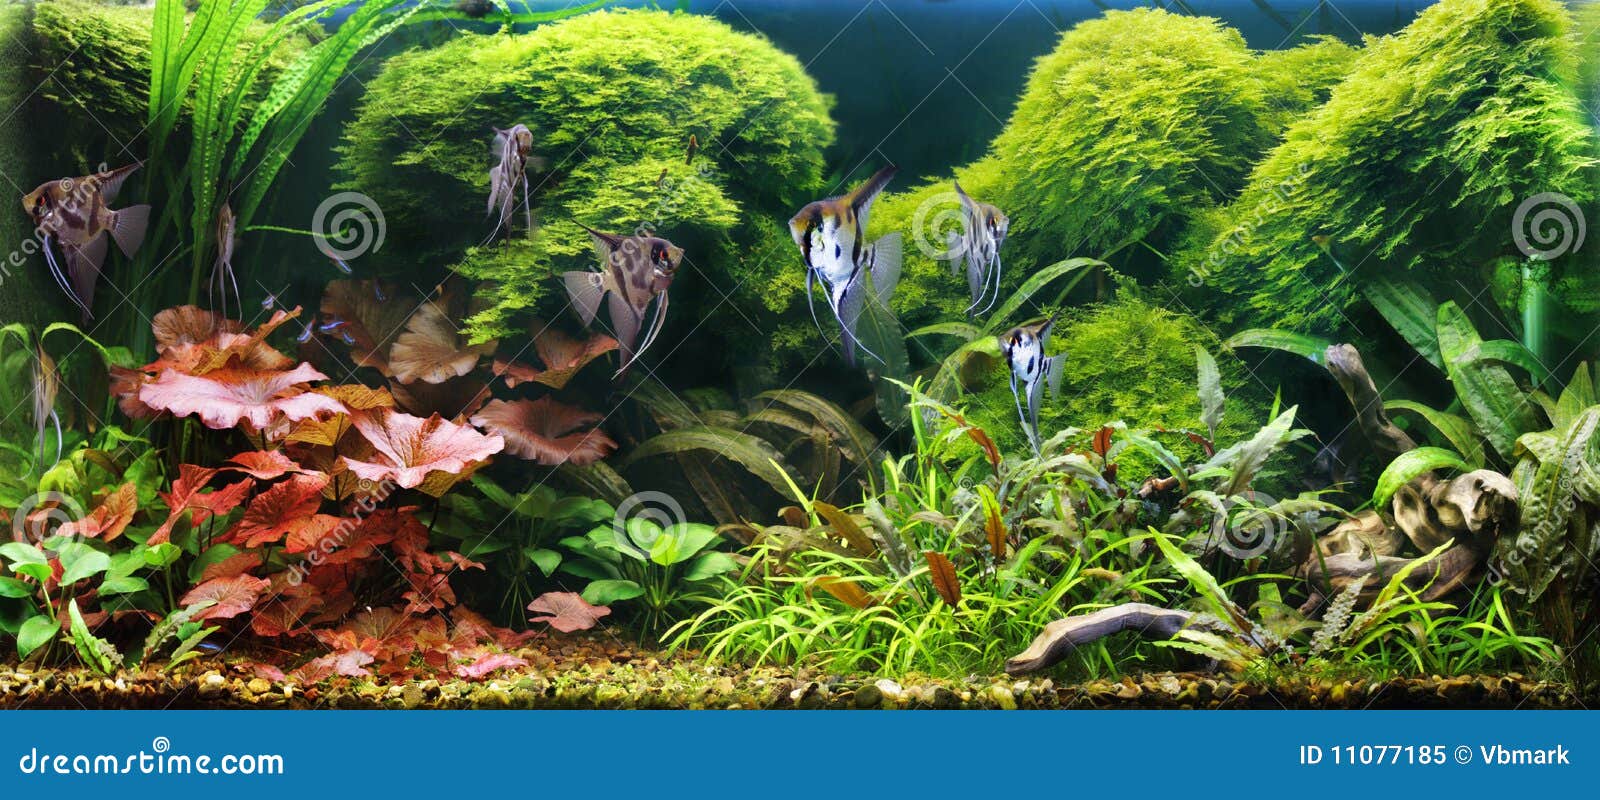 decorative aquarium